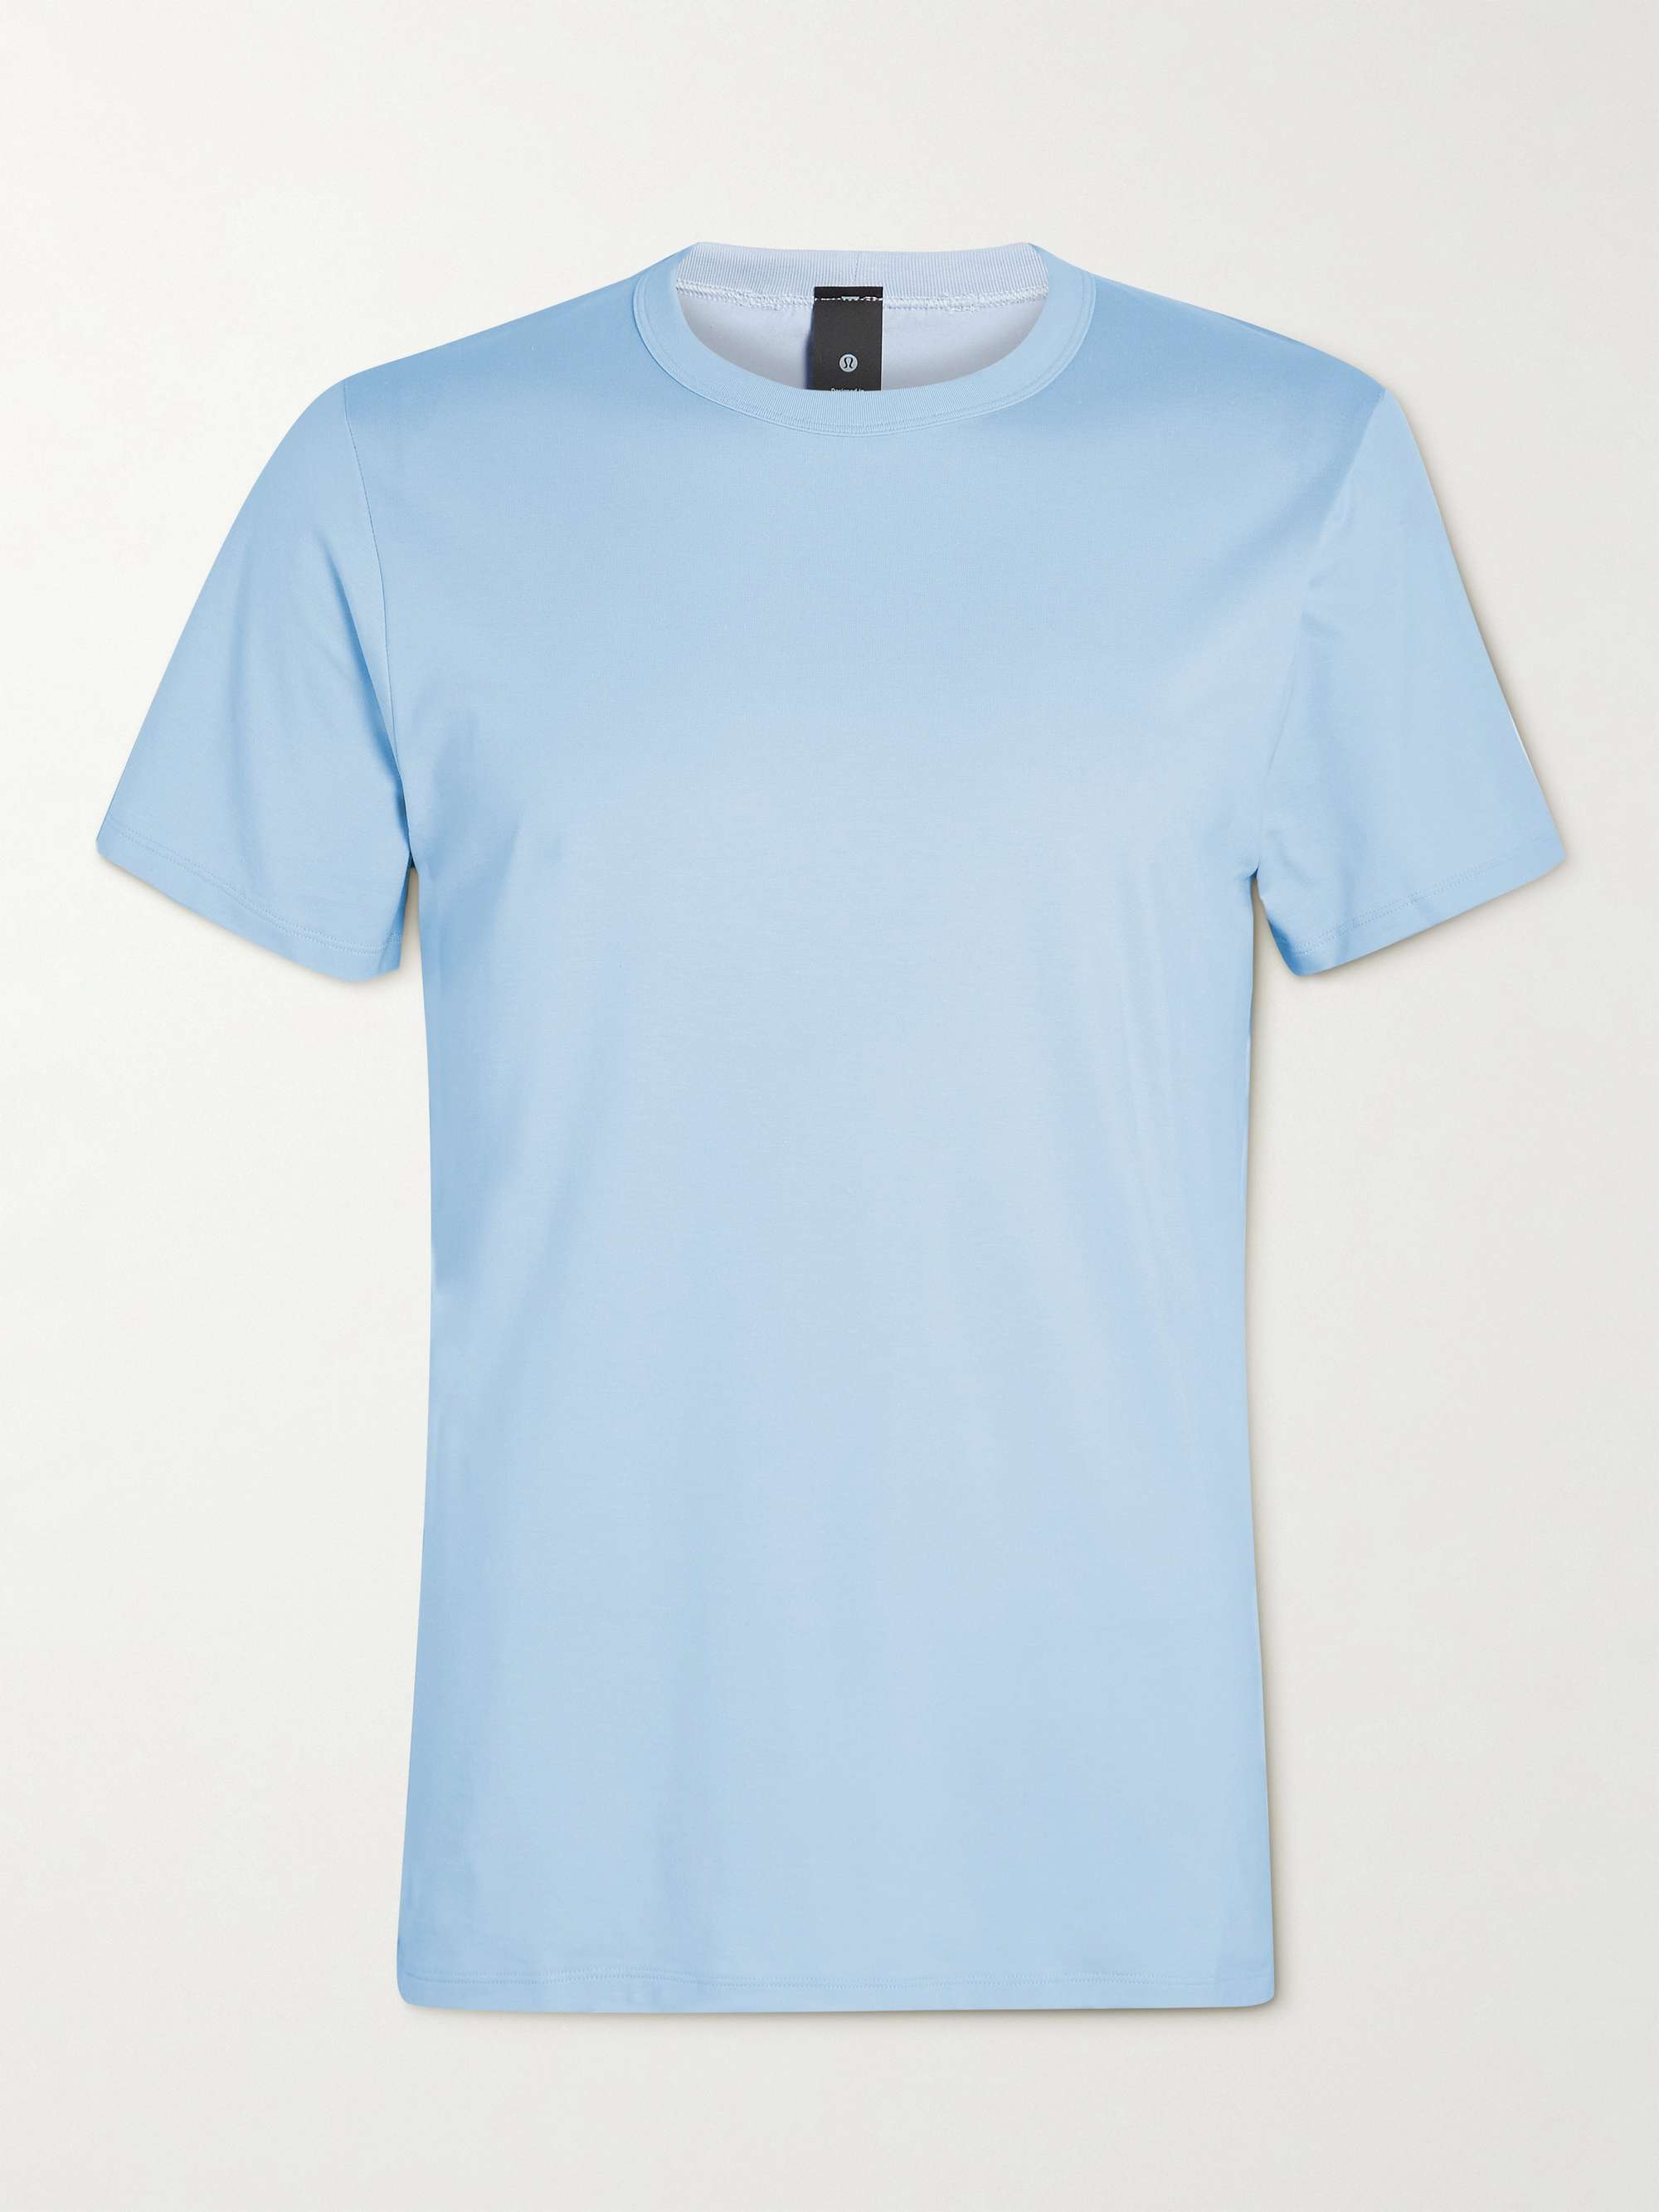 LULULEMON The Fundamental T Jersey T-Shirt